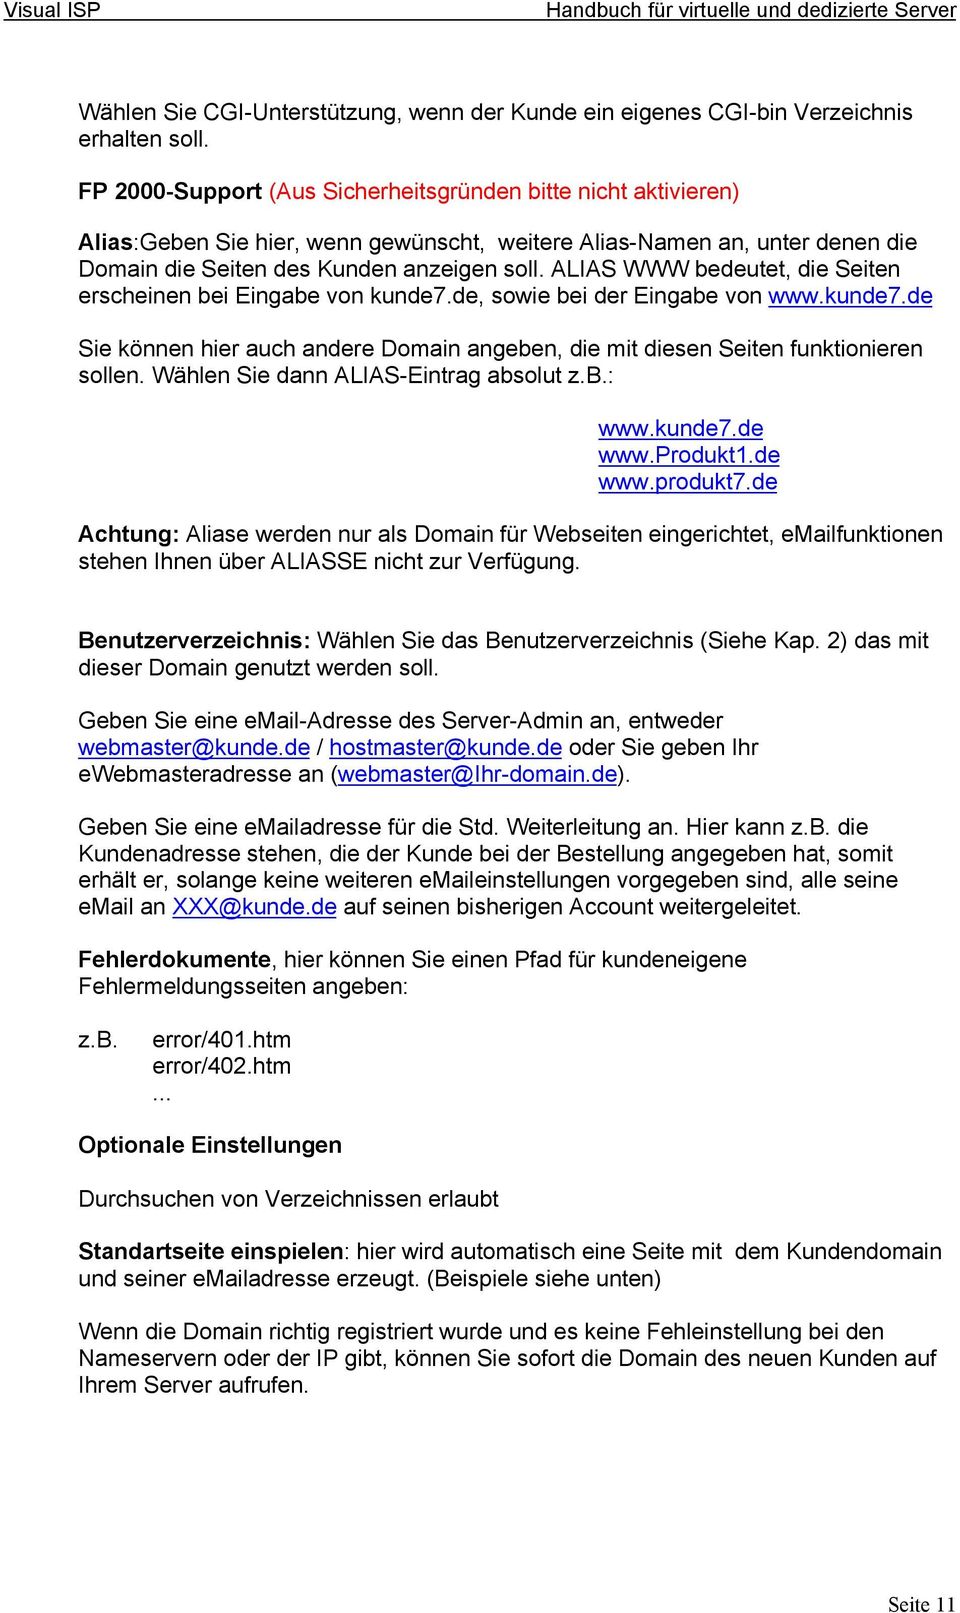 ALIAS WWW bedeutet, die Seiten erscheinen bei Eingabe von kunde7.de, sowie bei der Eingabe von www.kunde7.de Sie können hier auch andere Domain angeben, die mit diesen Seiten funktionieren sollen.